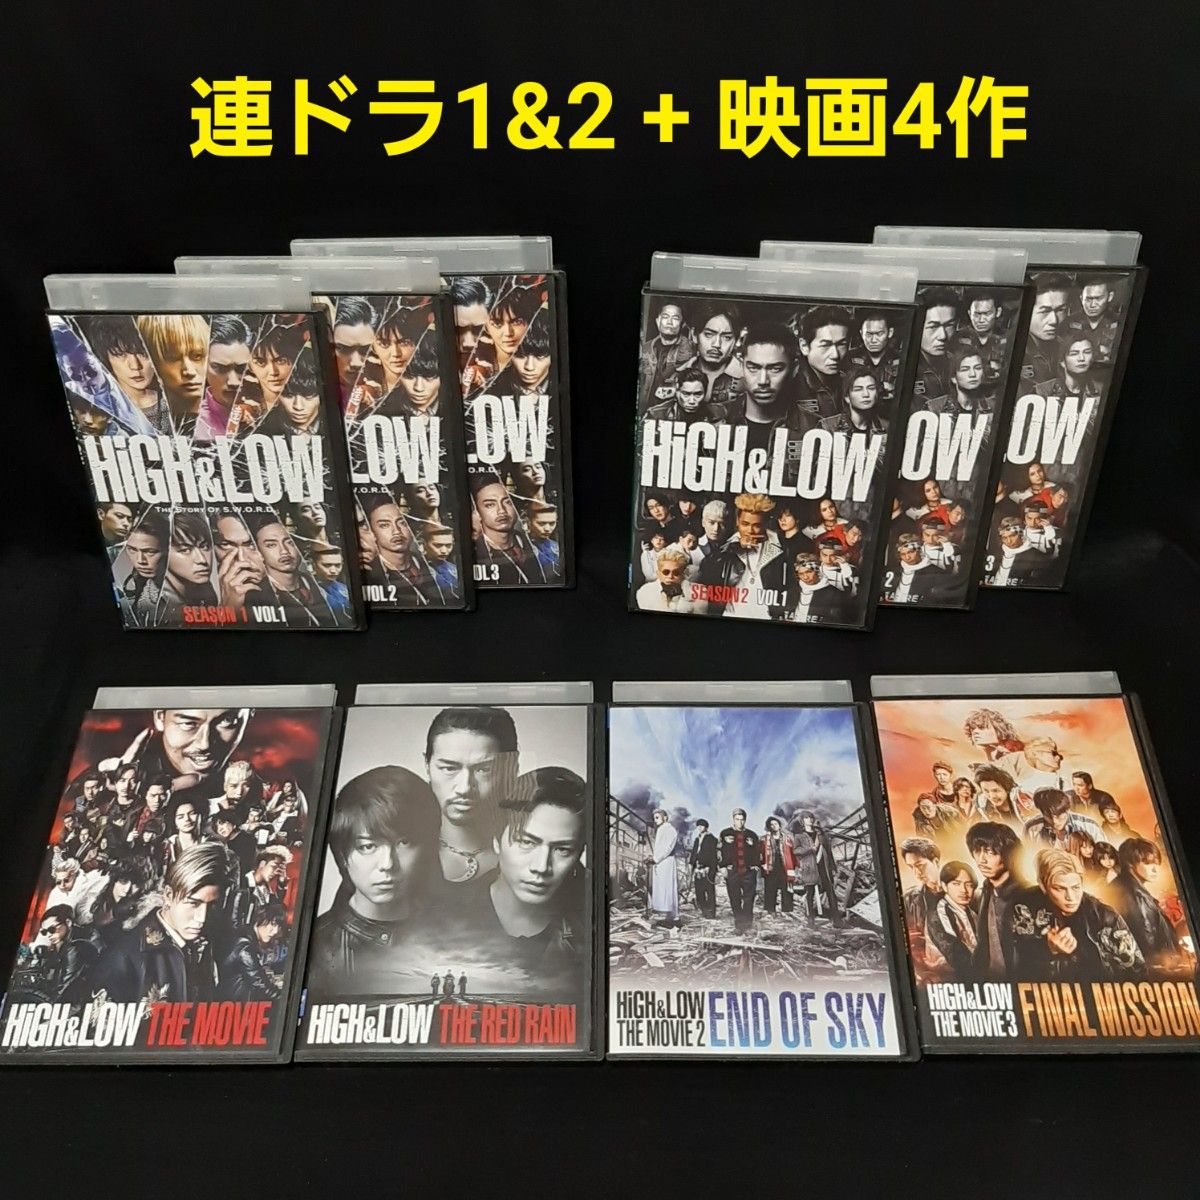 HiGH&LOW DVD 連続ドラマ SEASON1&2&映画 セット レンタル落ち the